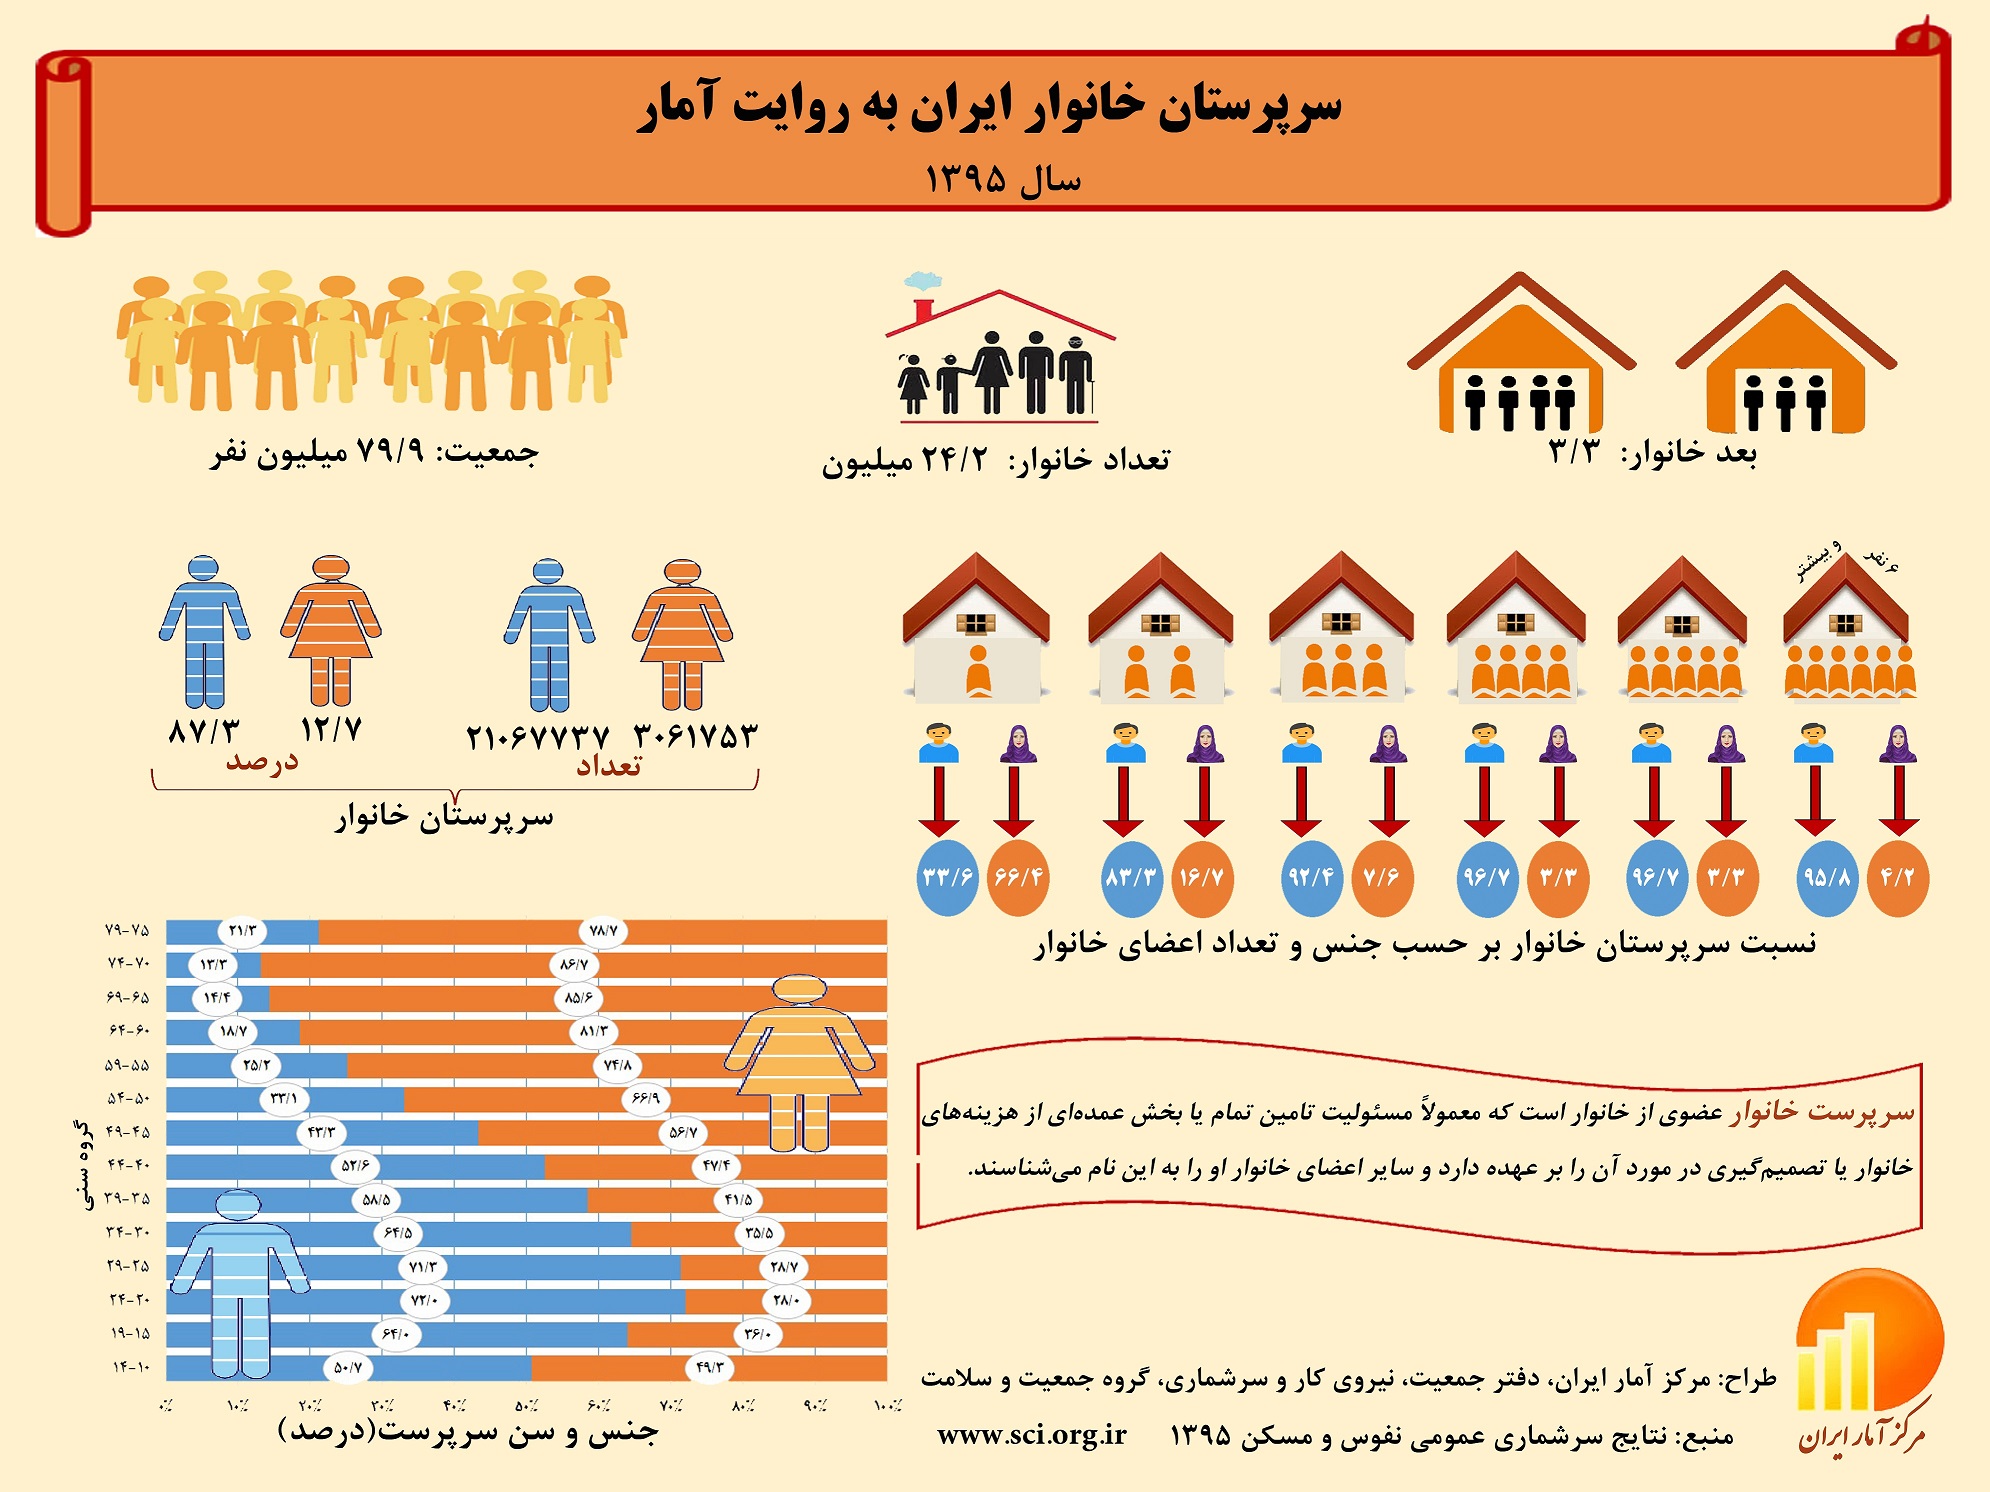 اینفوگرافی/سرپرستان خانوار در ایران به روایت آمار/بیش از 66 درصد خانوارهای تک نفره زن هستند